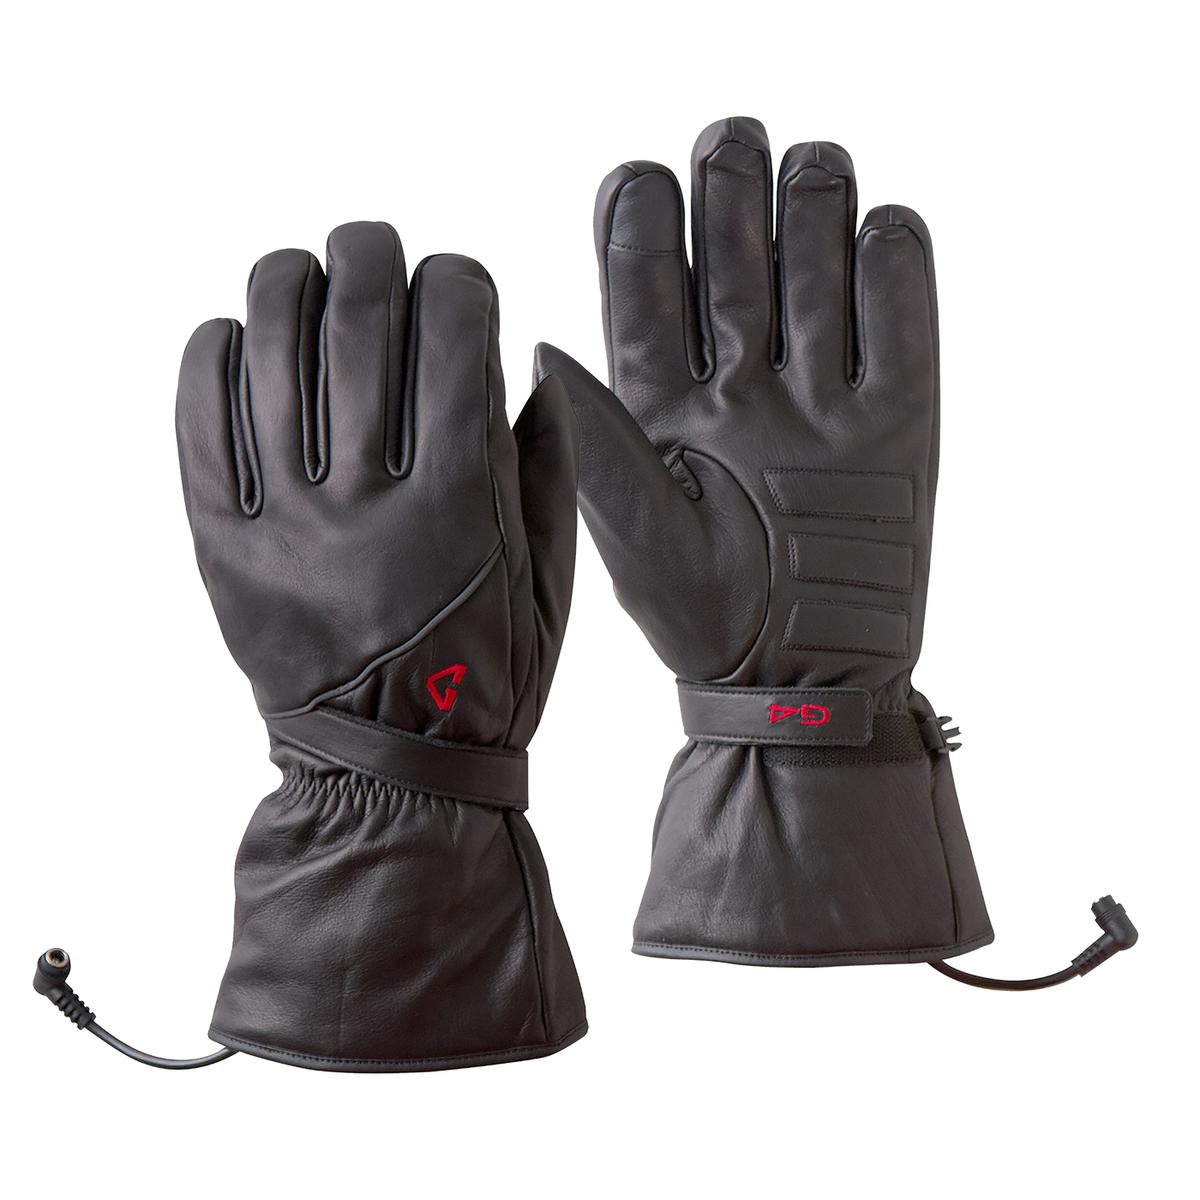 Gerbing Vanguard Heated Gloves - 12V Motorcycle – Gerbing Heated 